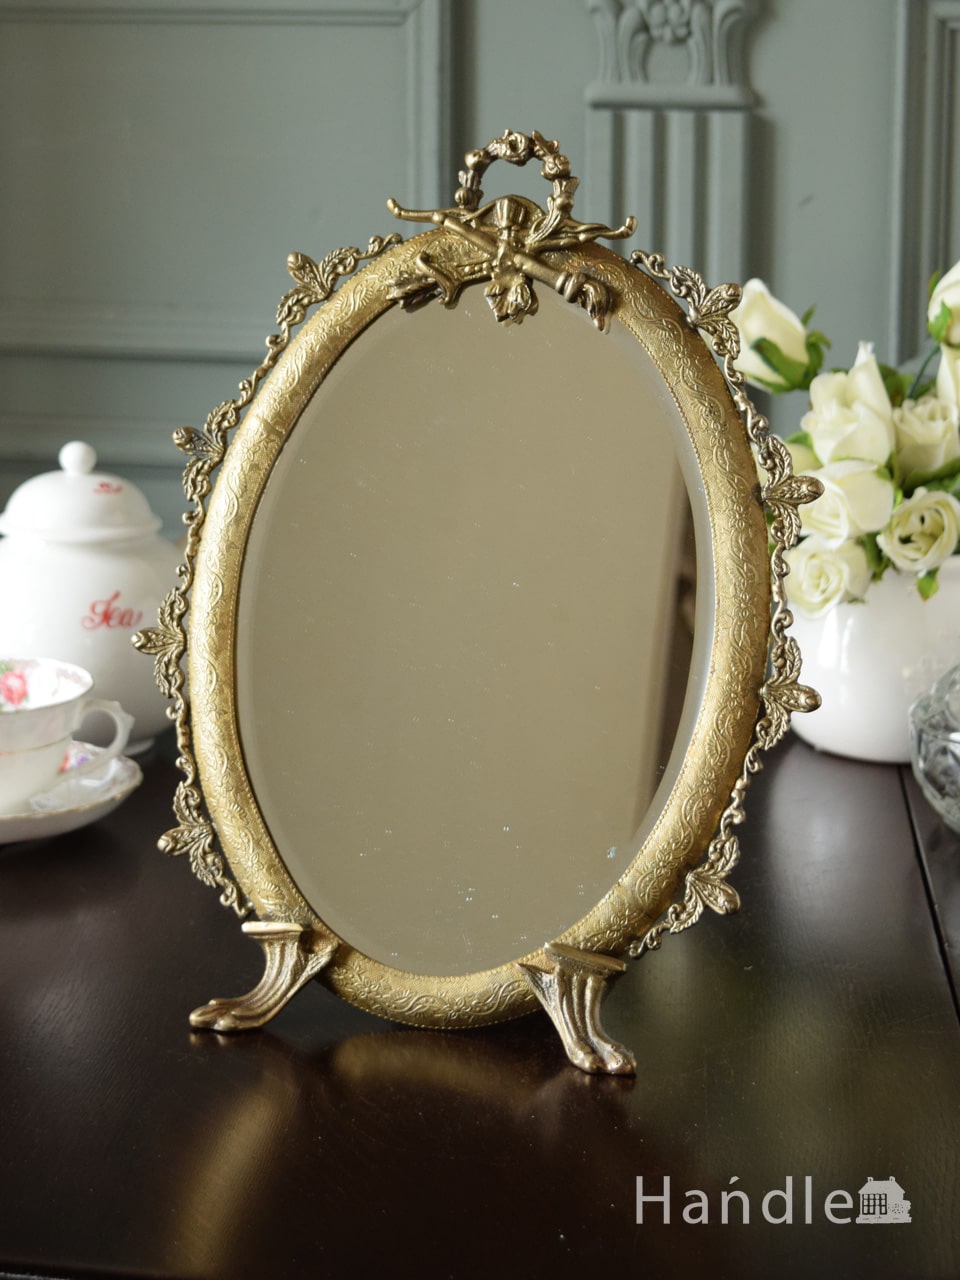 アンティーク調のおしゃれな鏡、華やかな装飾が美しいスタンドミラー(ゴールド)